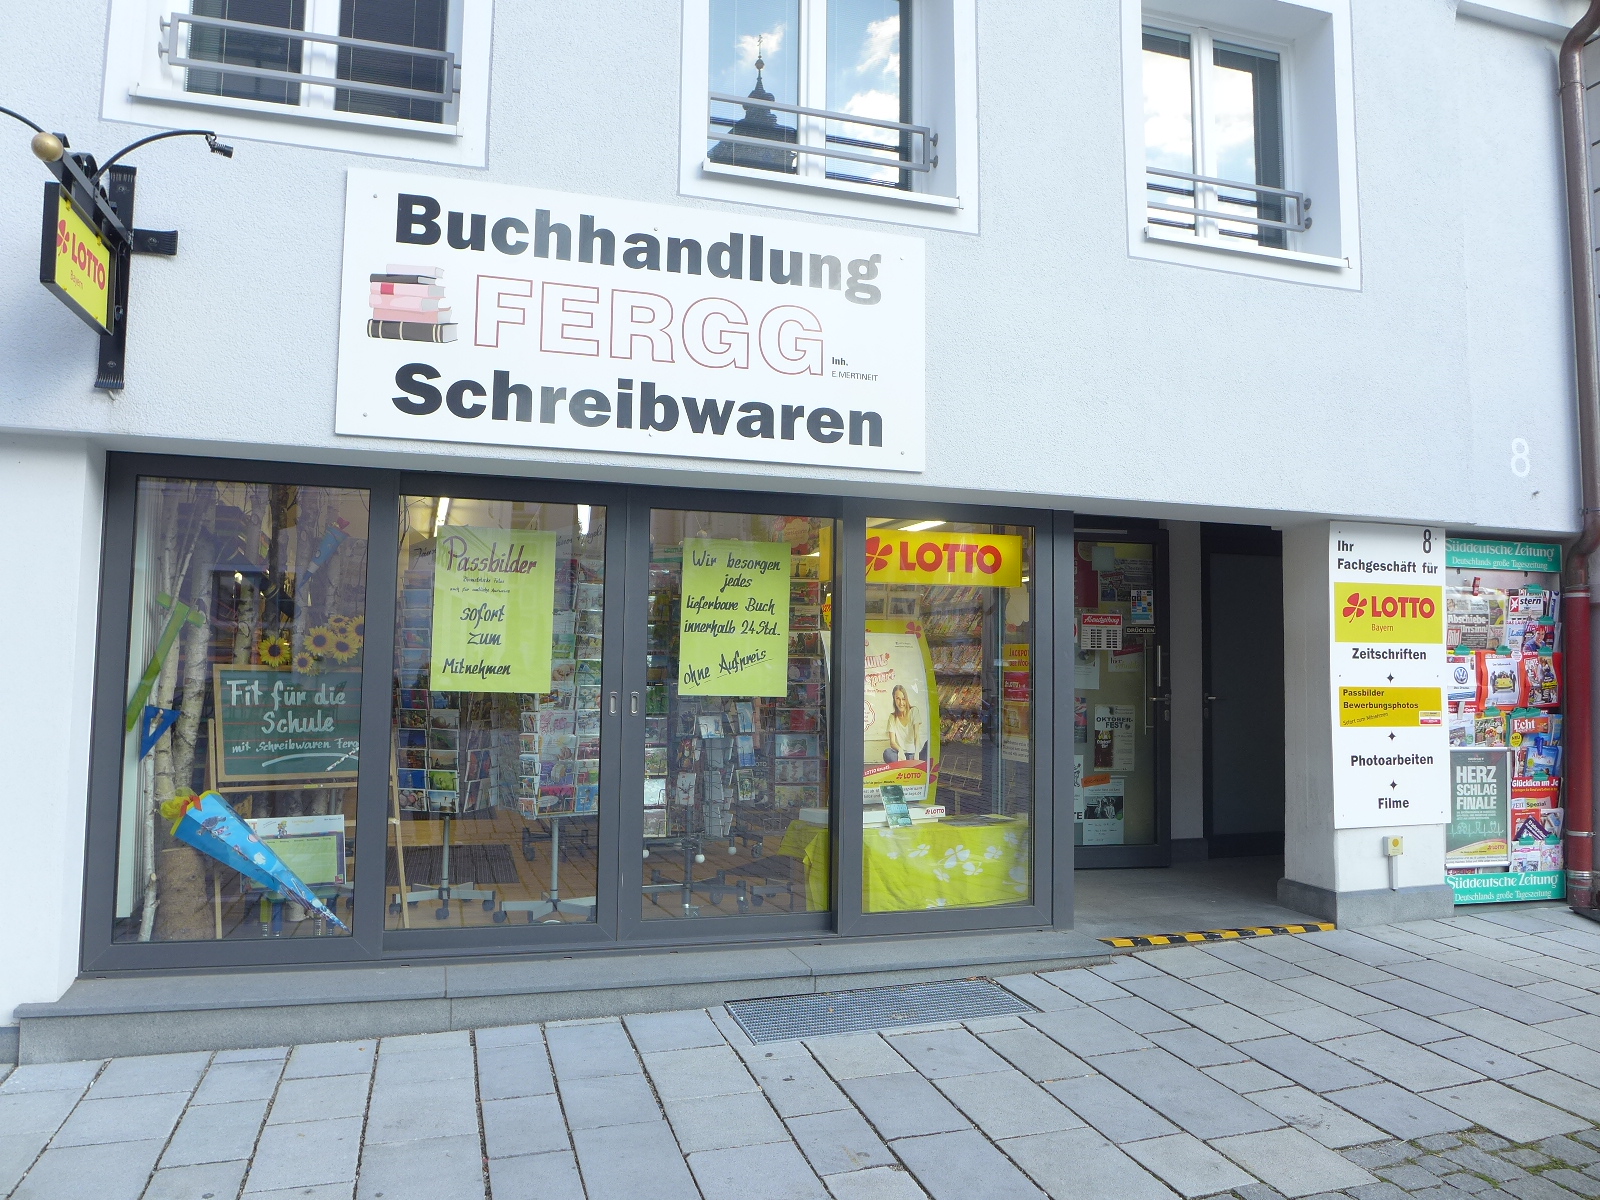 Local Buchhandlung-fergg.de